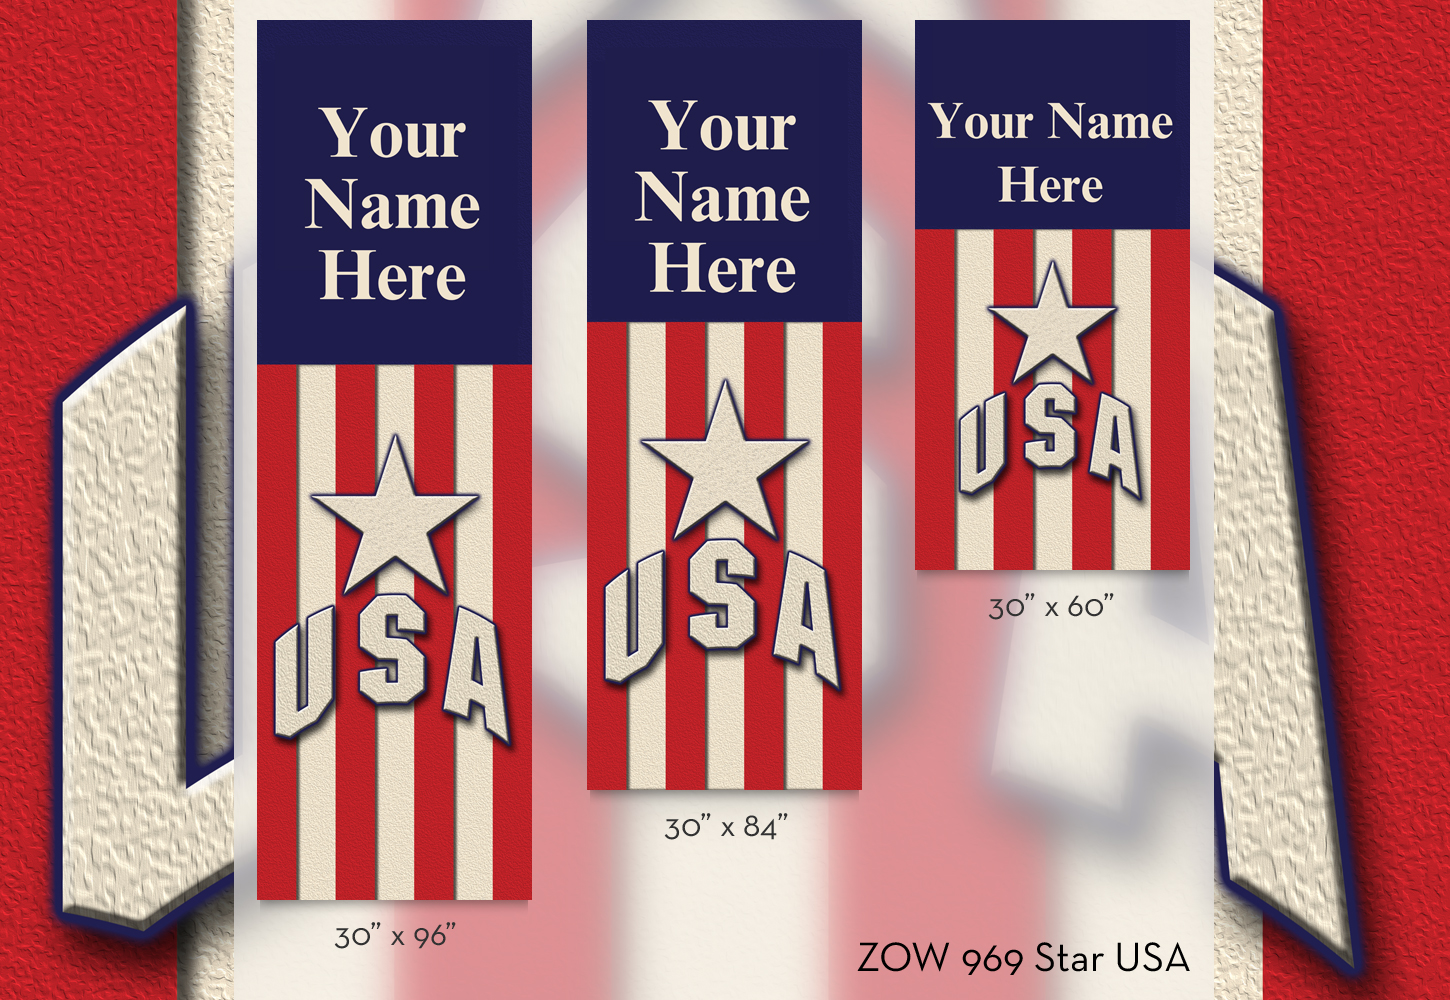 ZOW 969 Star USA